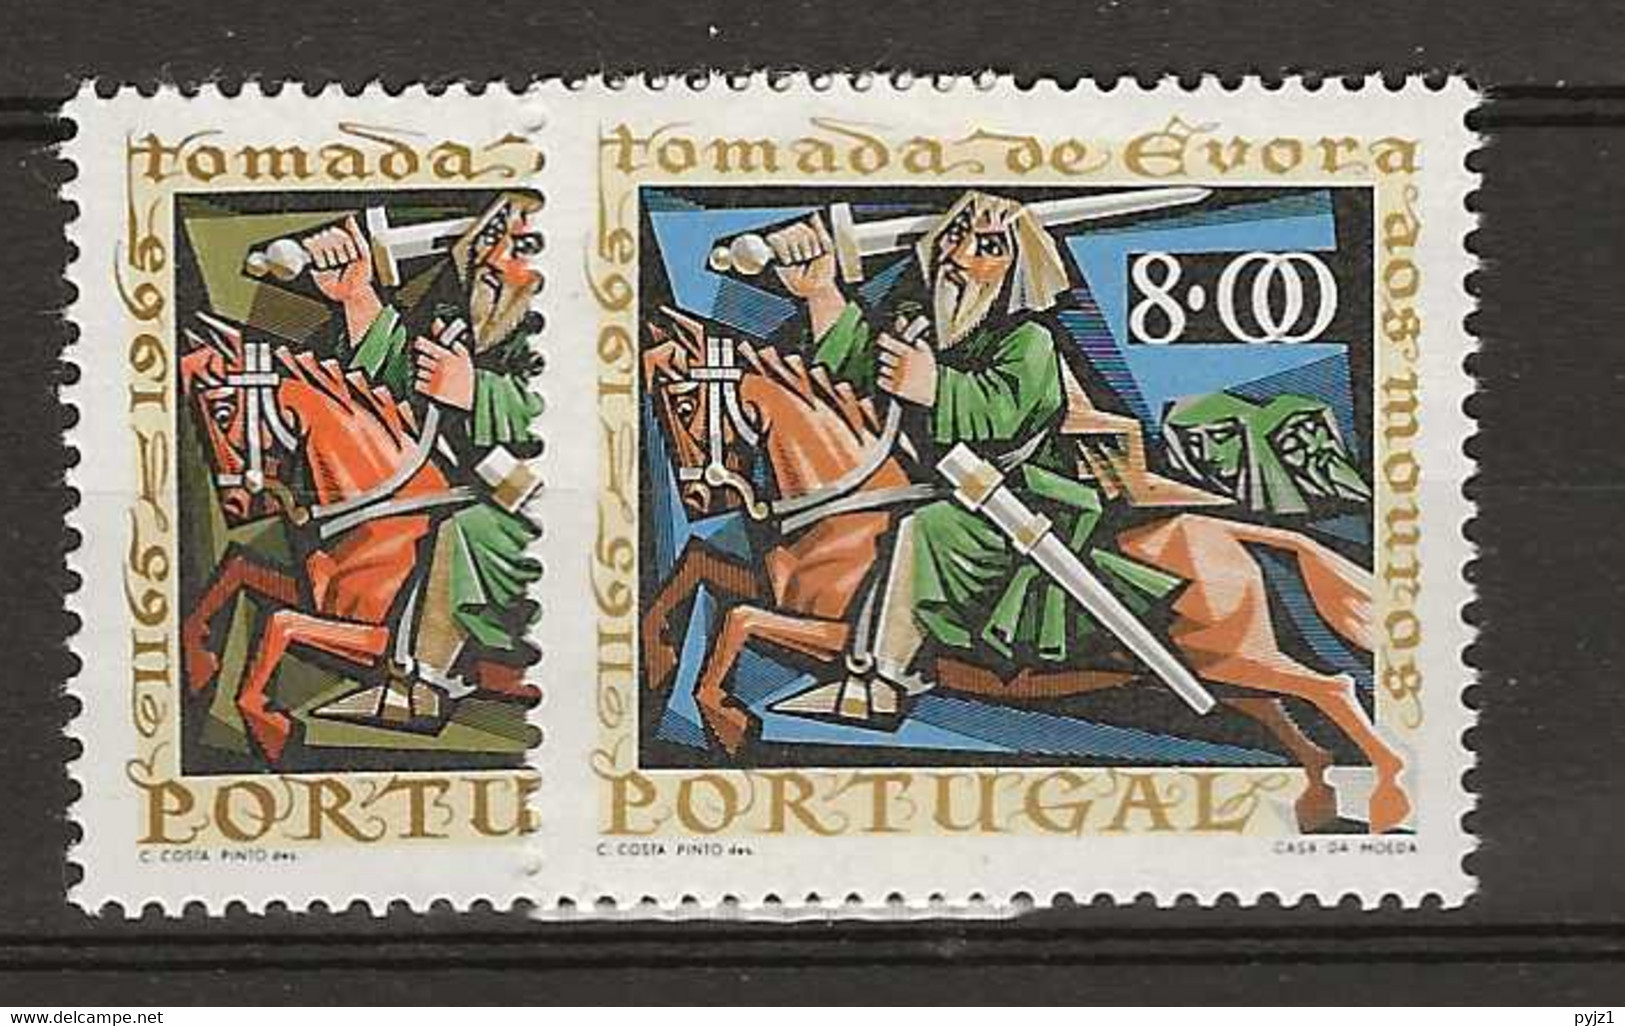 1966 MNH Portugal, Mi 1006-07 Postfris** - Neufs